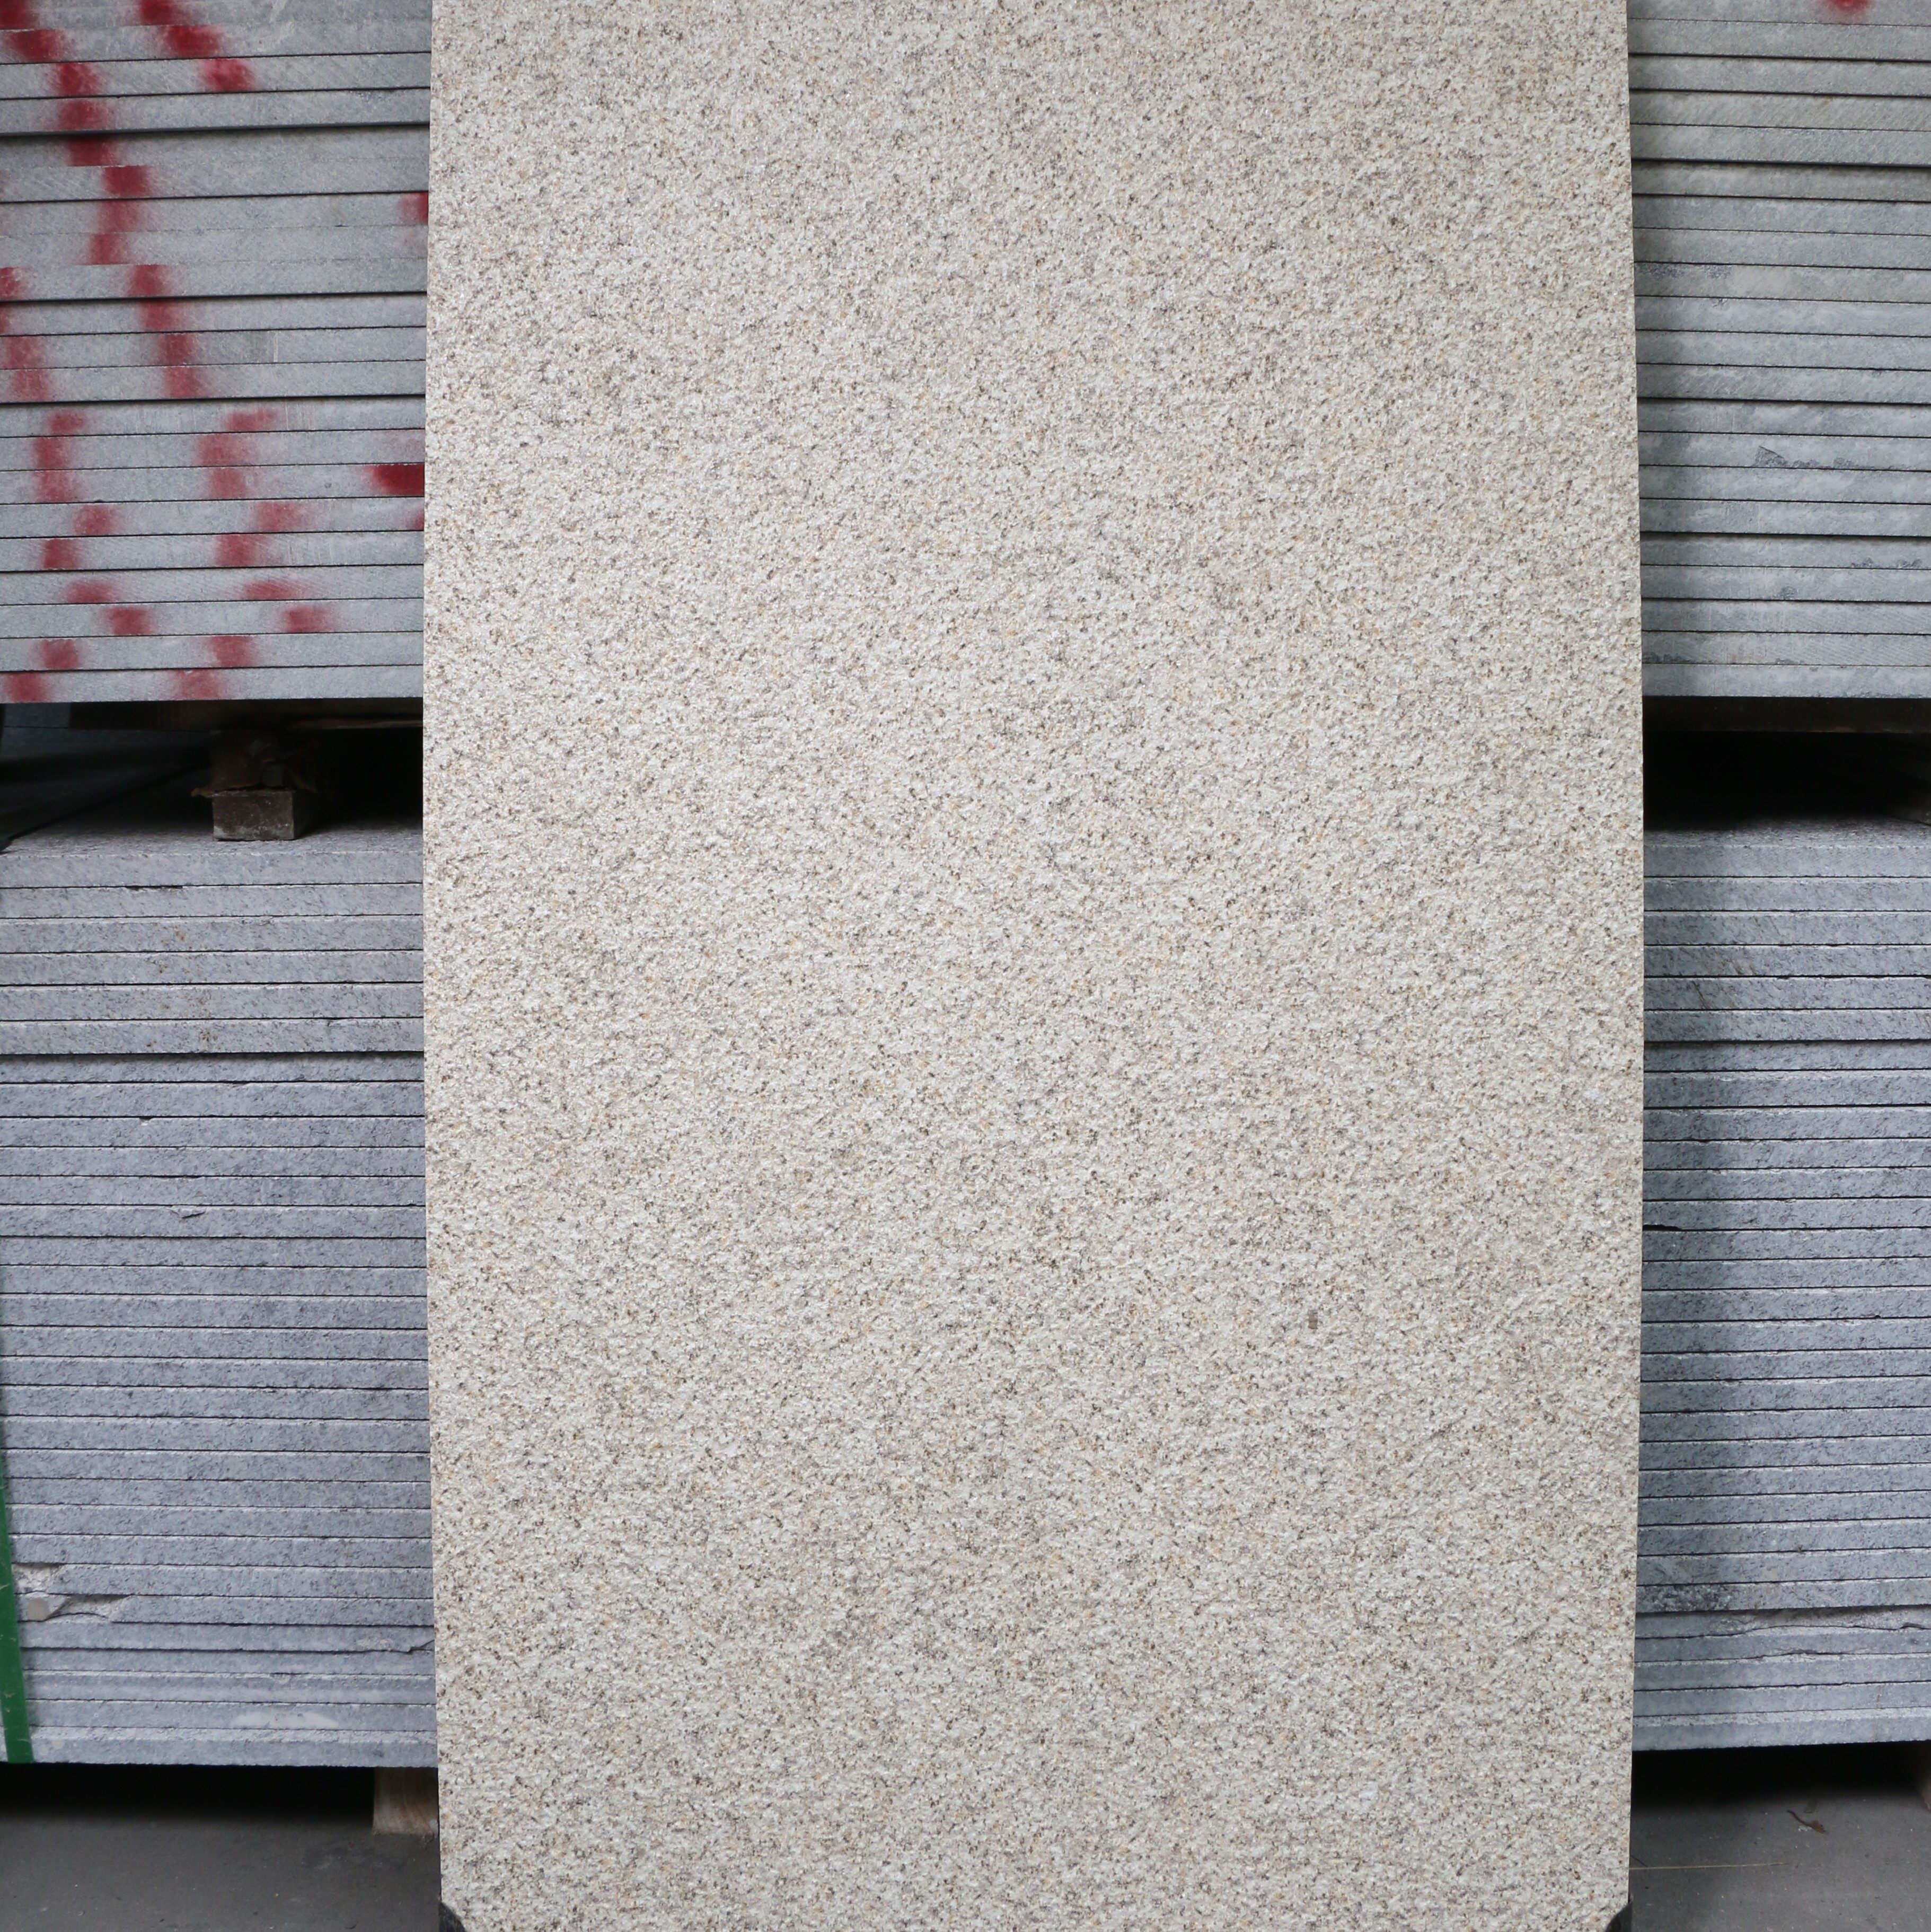 Rust Stone Granite Slab Wholesale